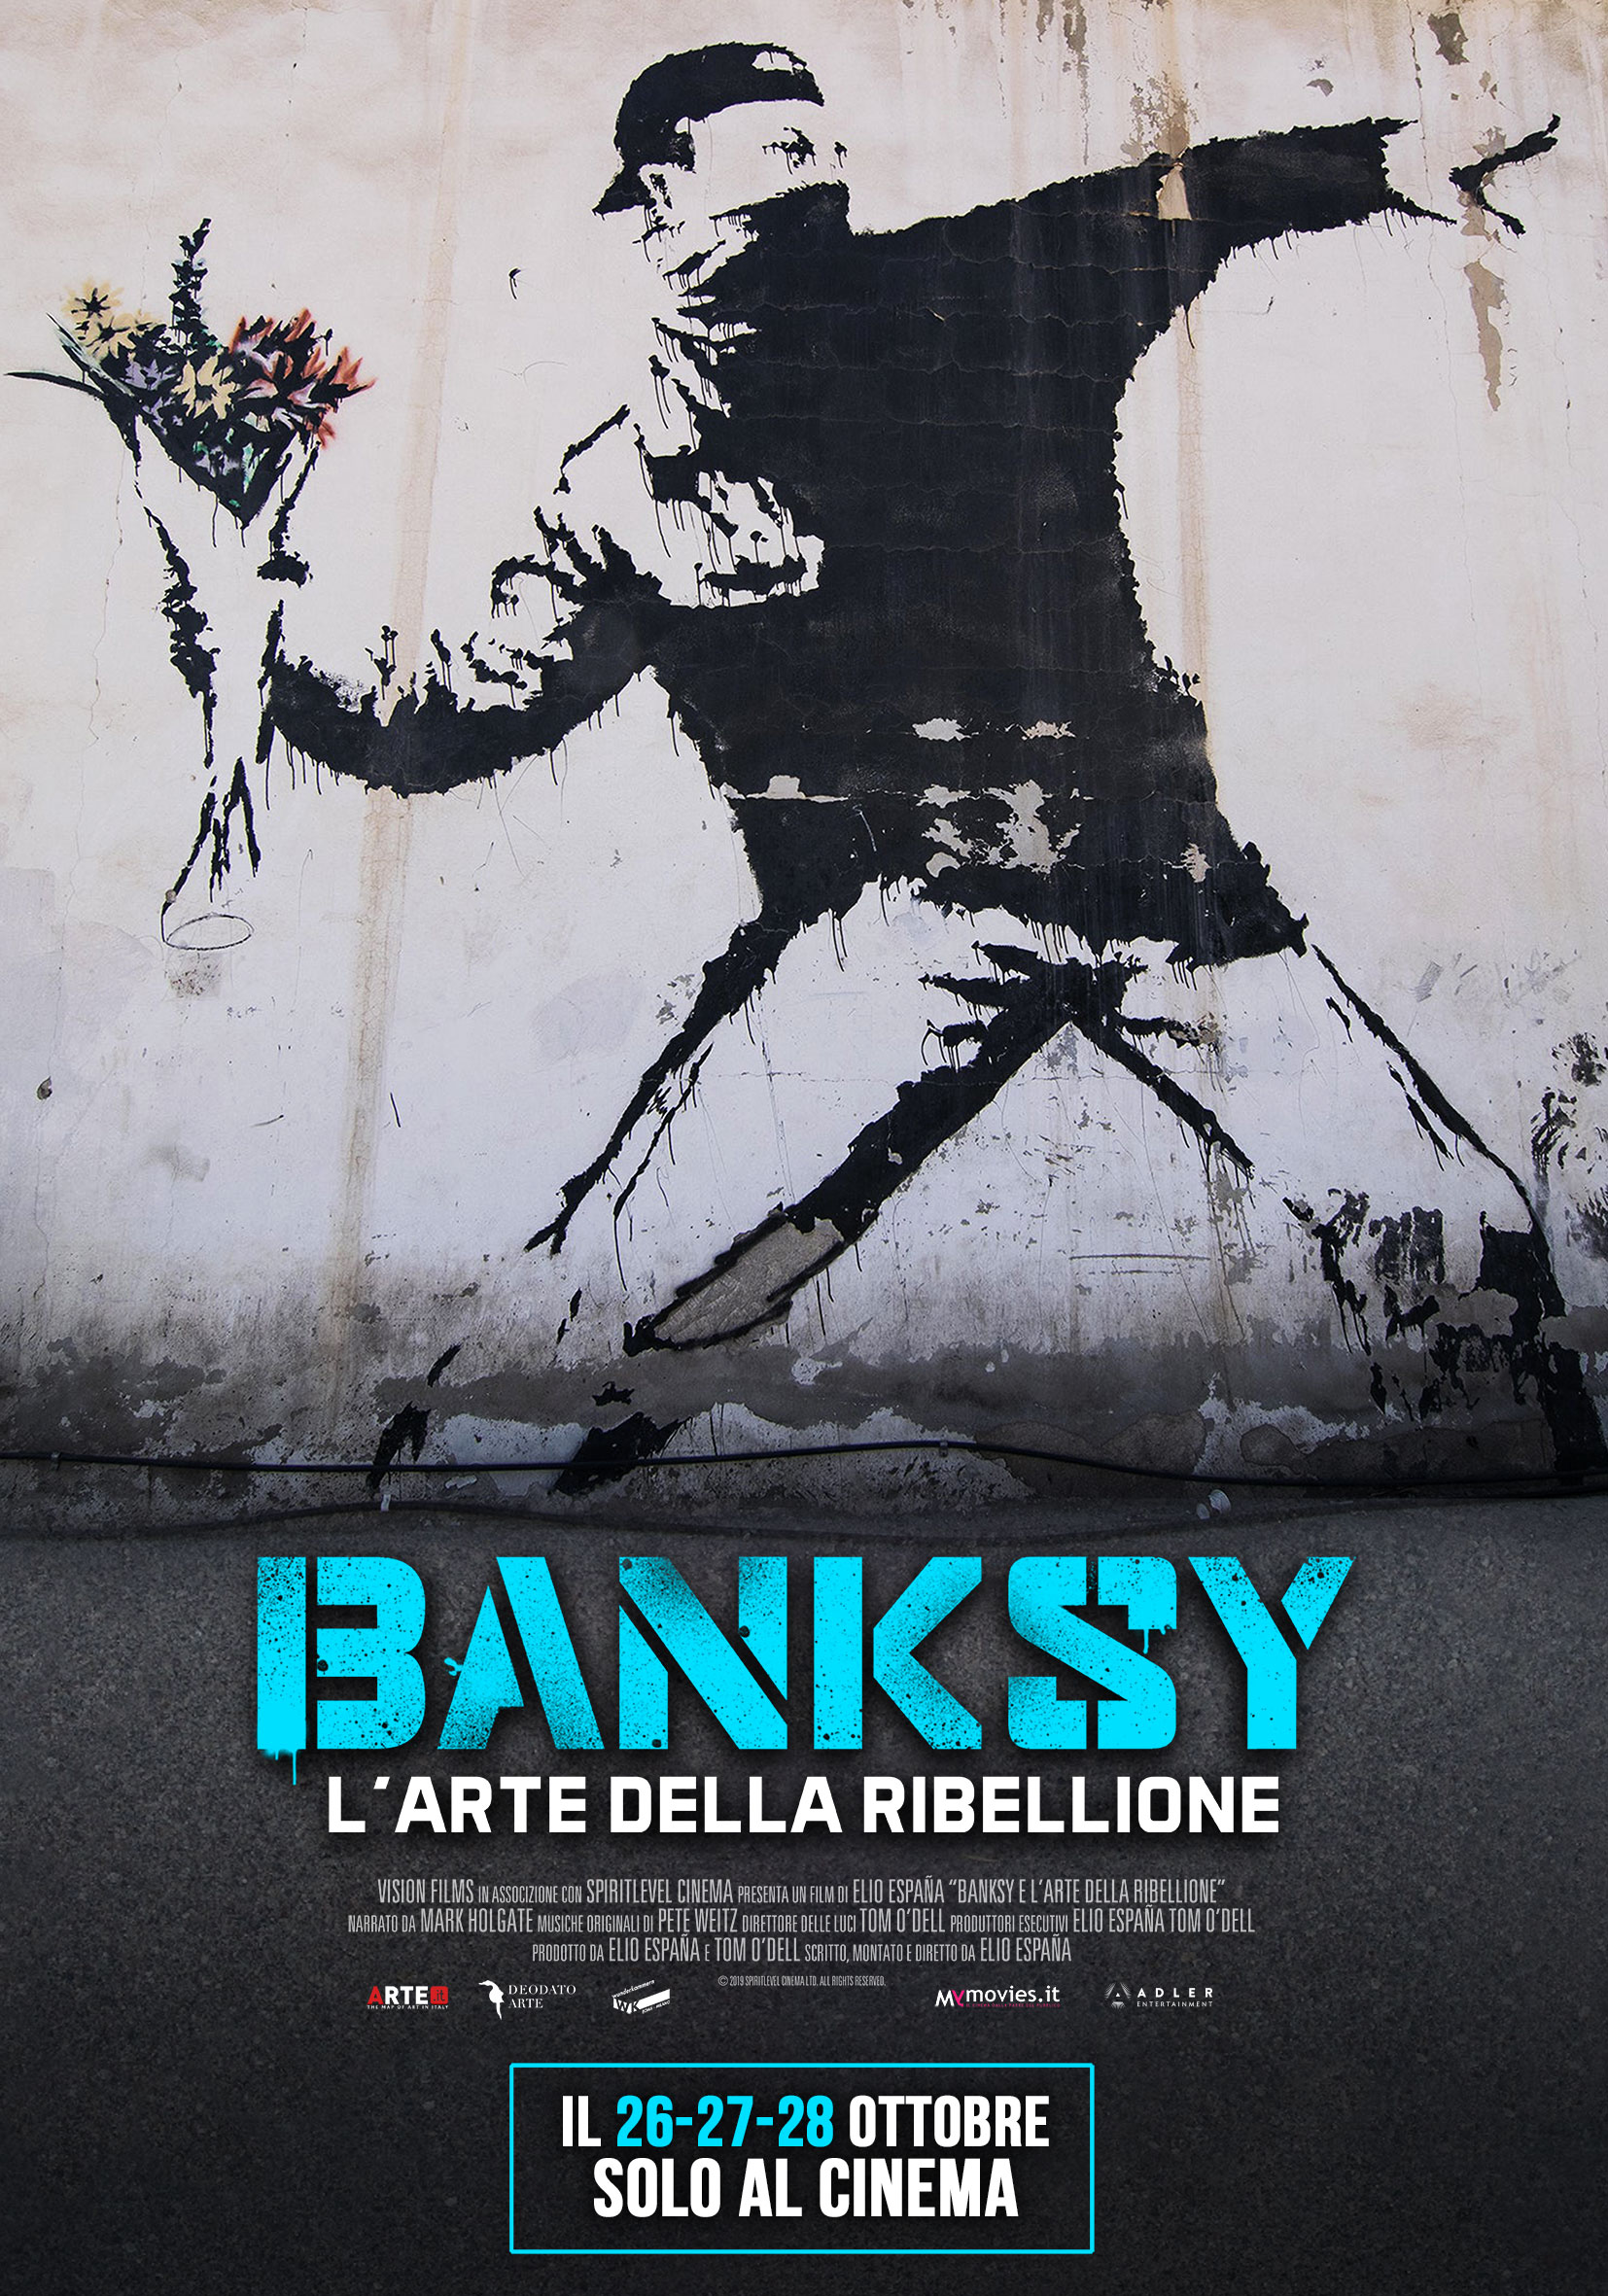 Banksy – L’arte della ribellione